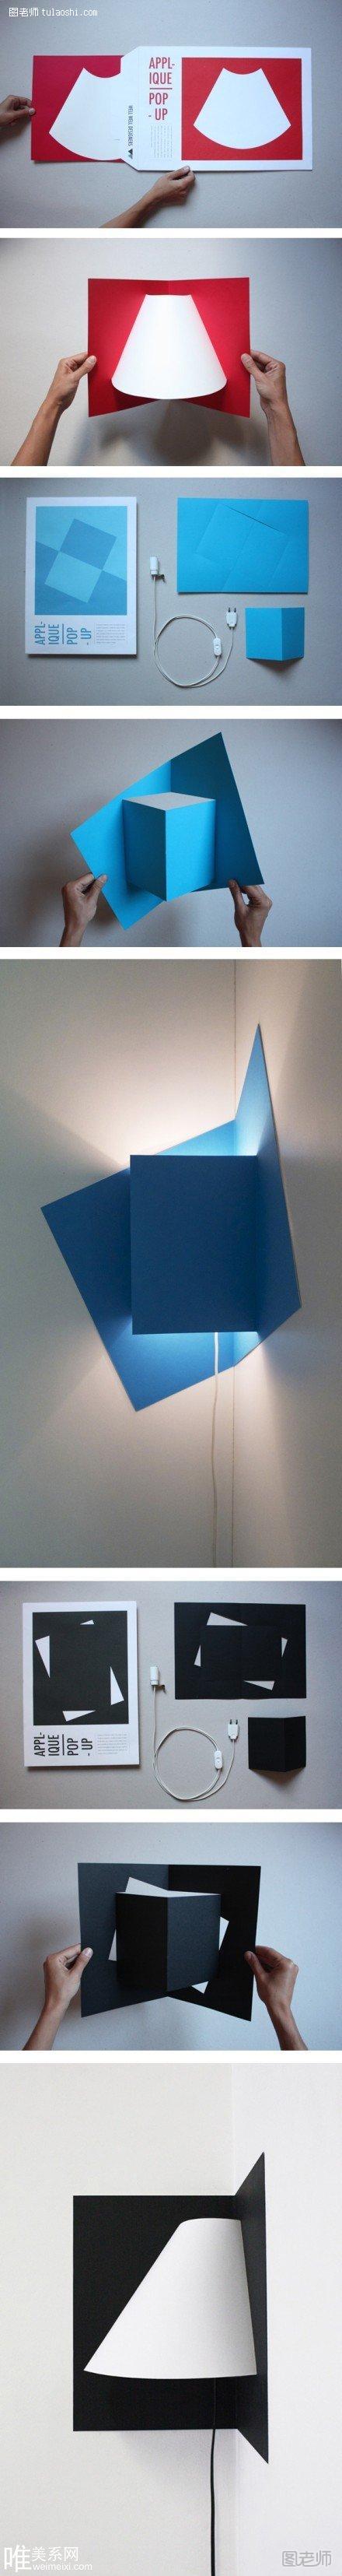 简单有趣的折纸灯具好设计